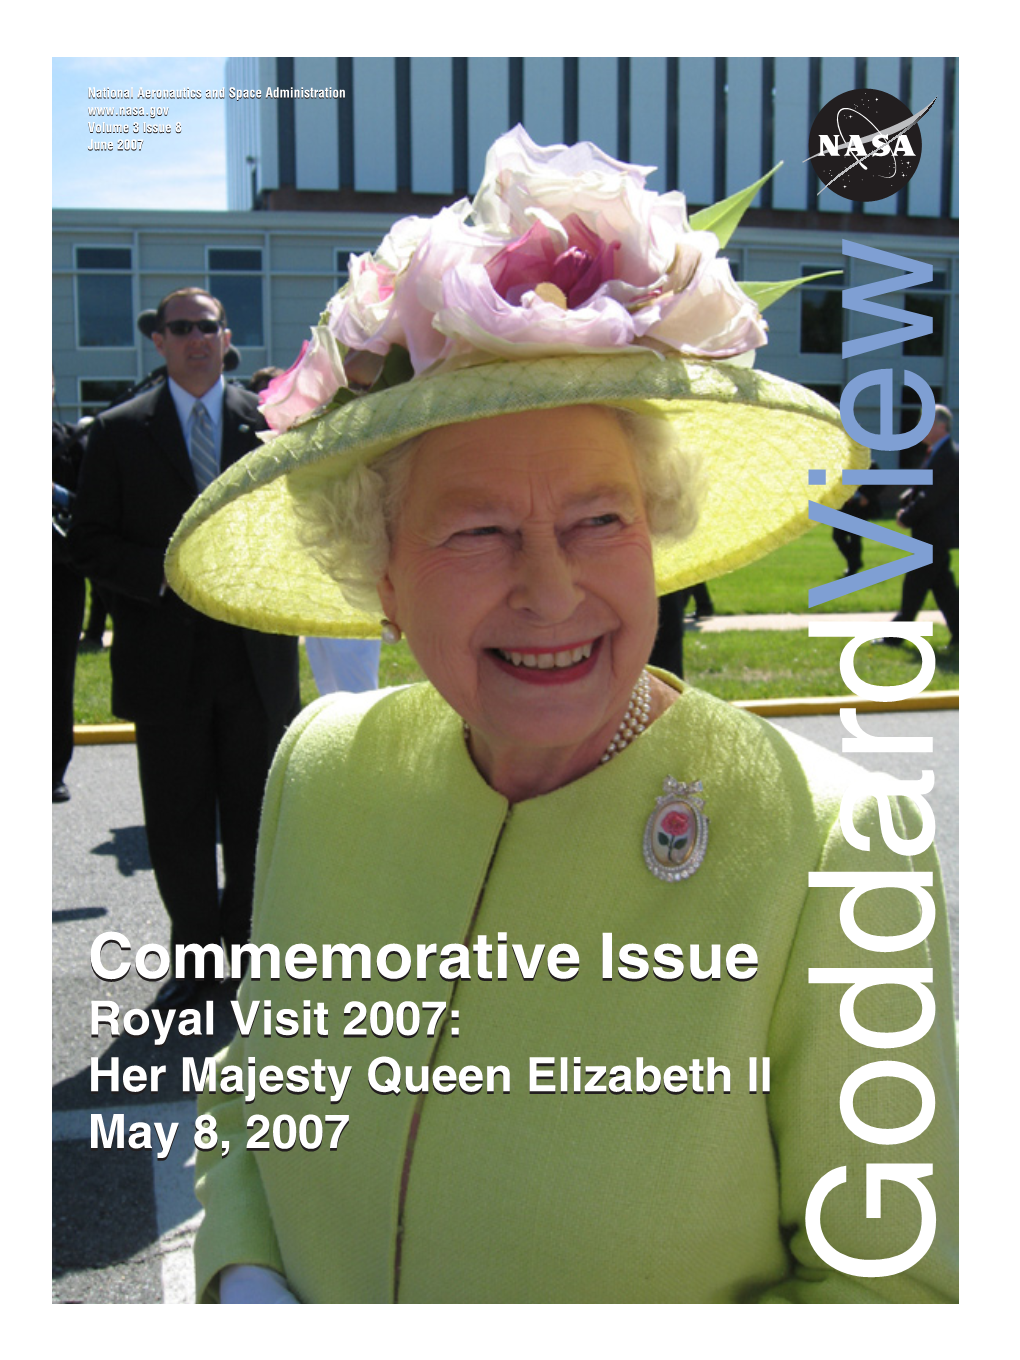 Her Majesty Queen Elizabeth II May 8, 2007